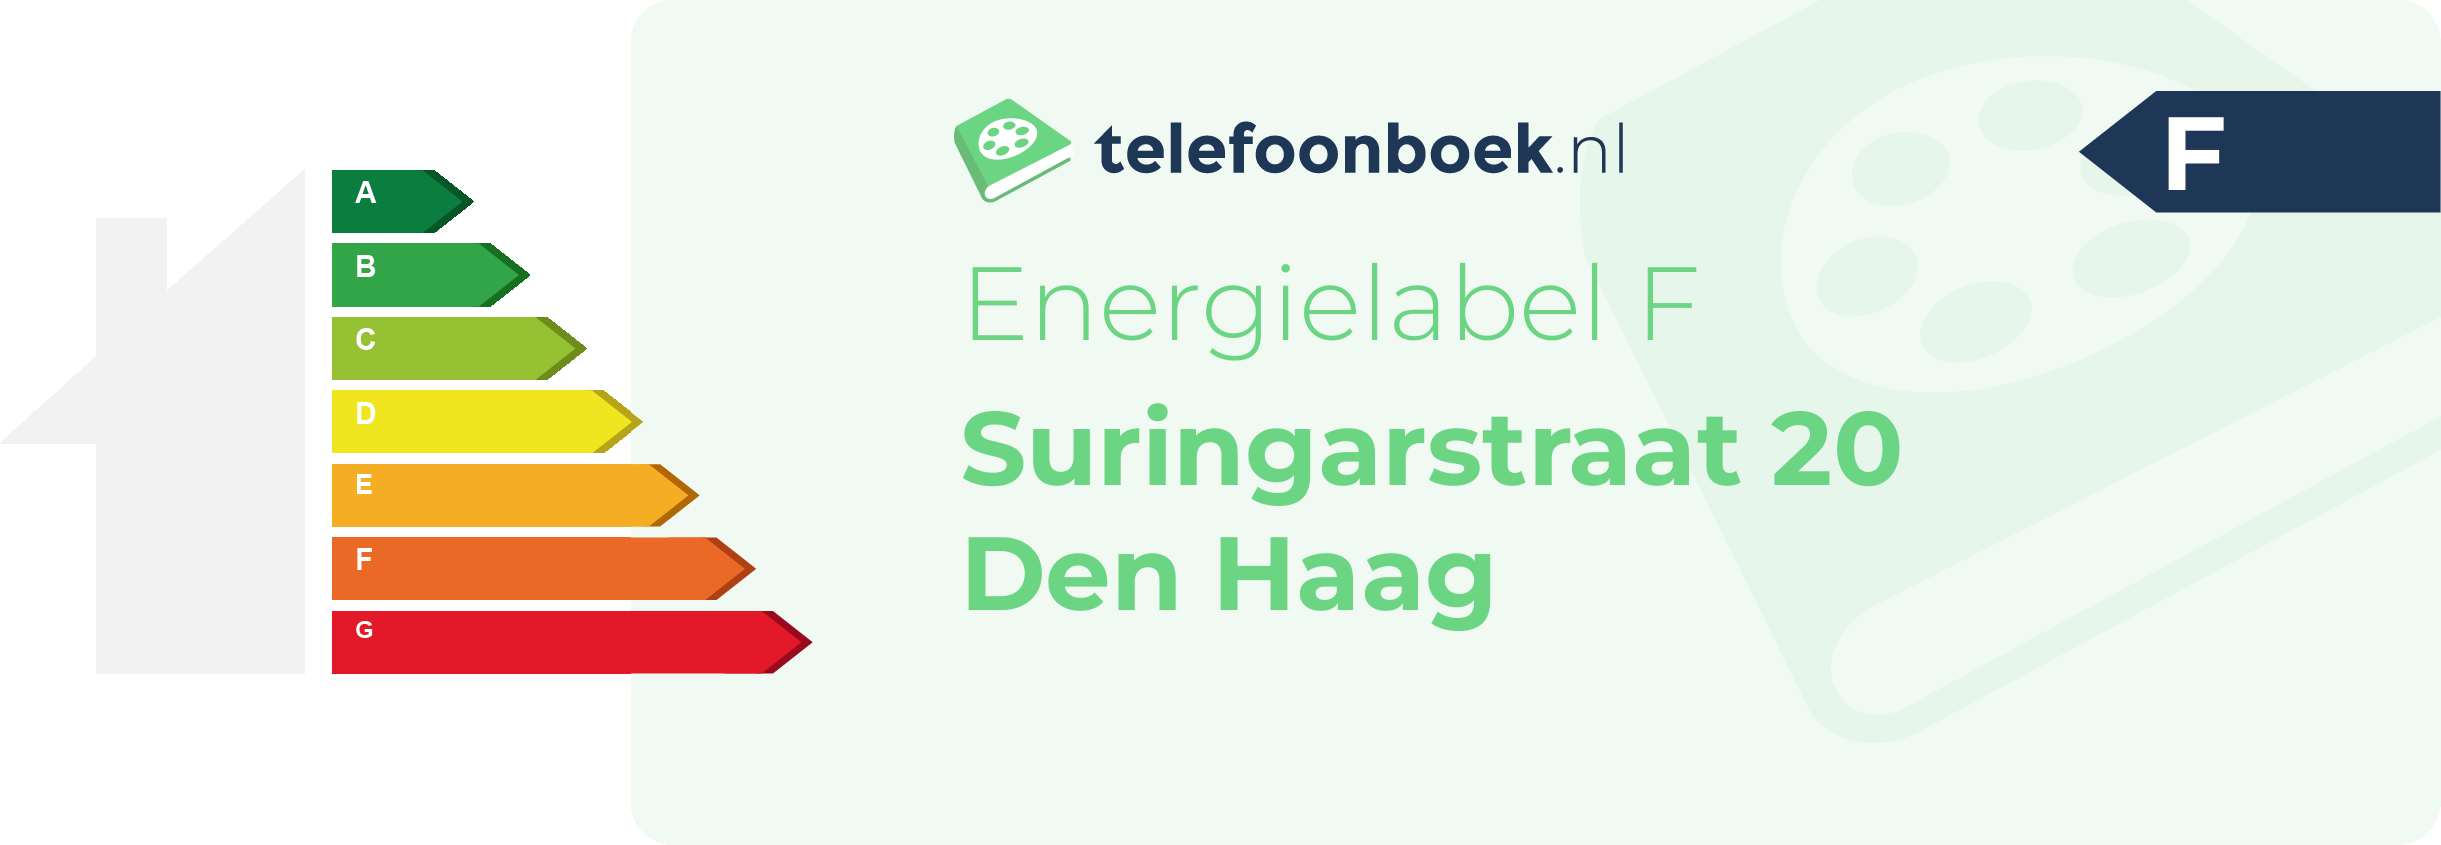 Energielabel Suringarstraat 20 Den Haag